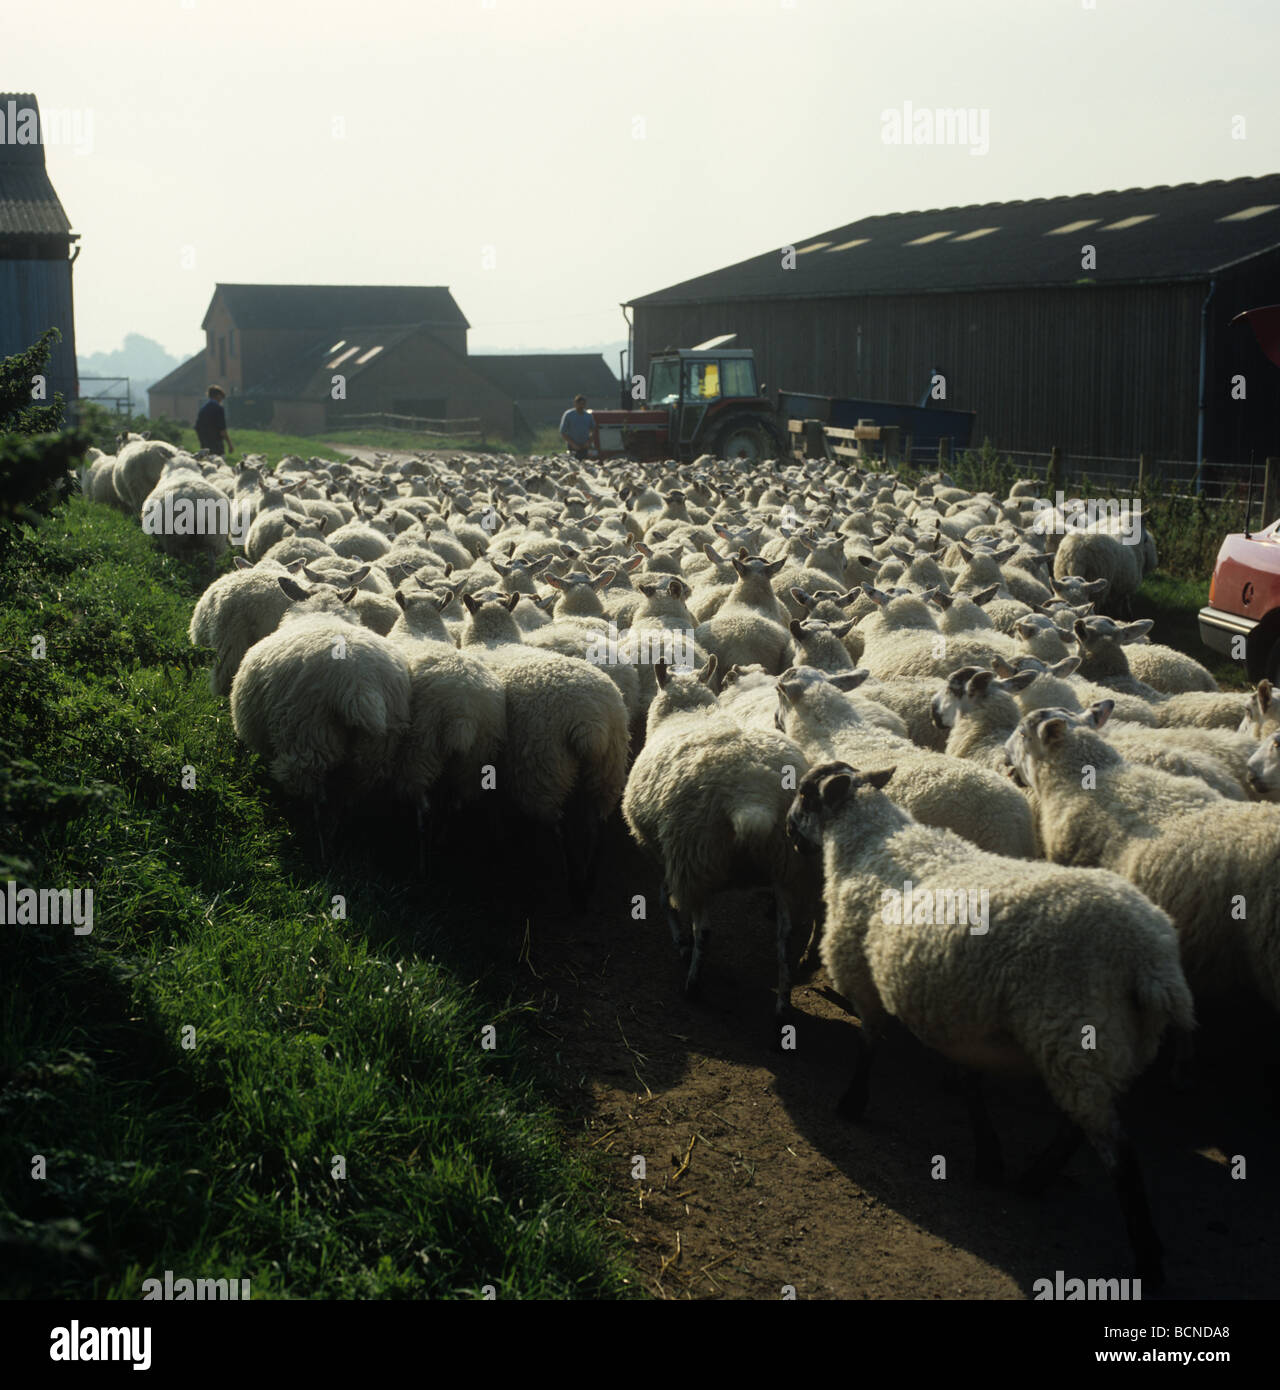 Al norte de Inglaterra mula ovejas circulando por una carretera rural entre los edificios de la granja para mojar Foto de stock